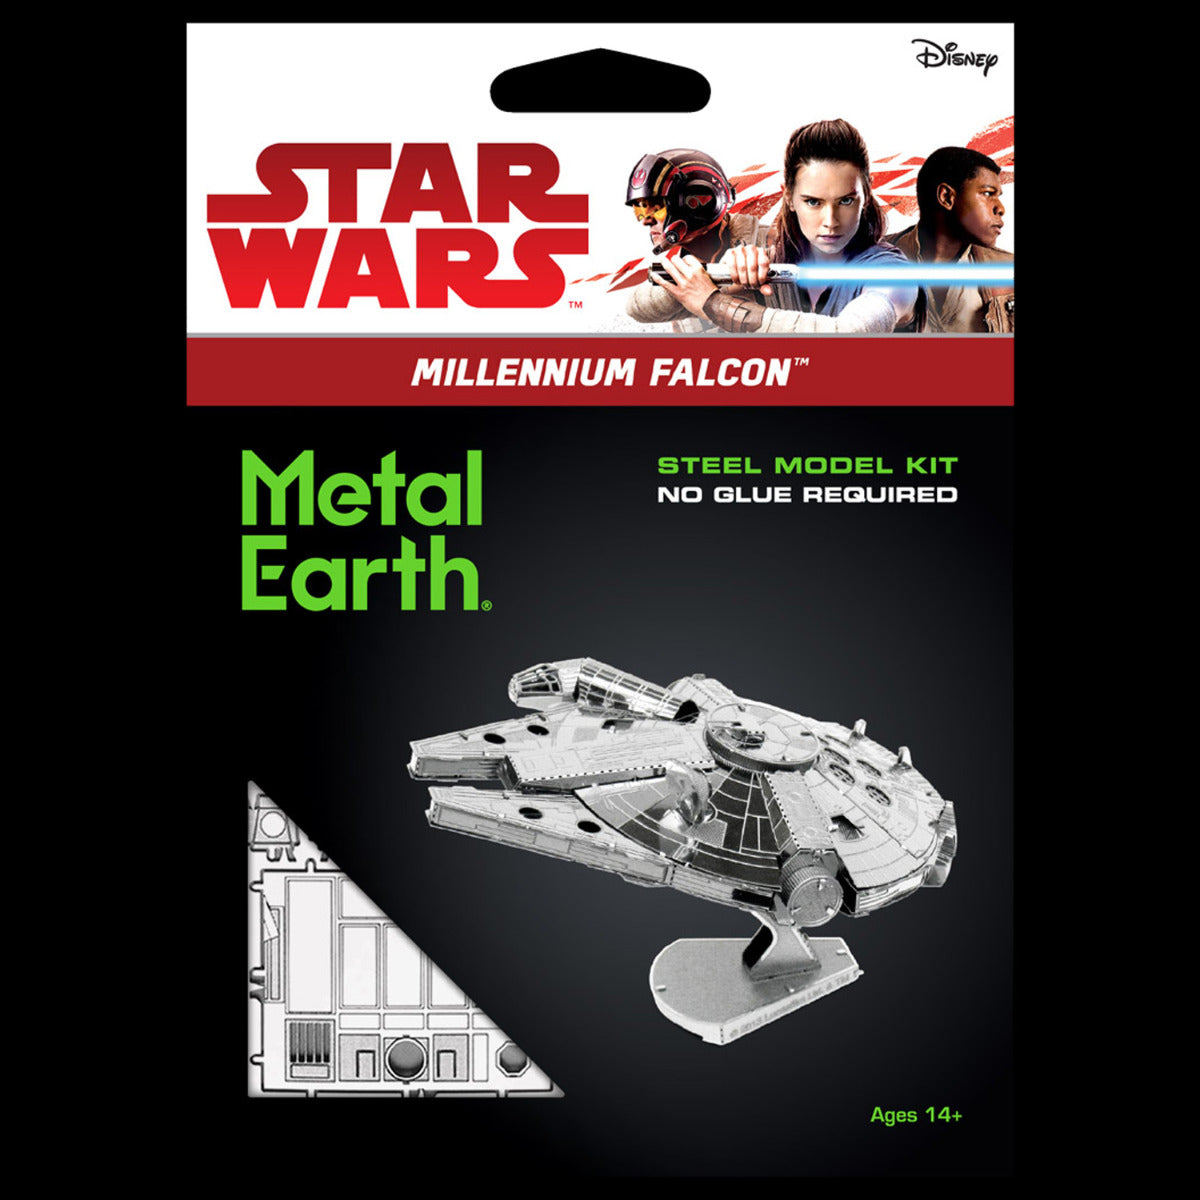 Metal Earth STAR WARS Millenium Falcon MMS251 3D Figur Metallbausatz